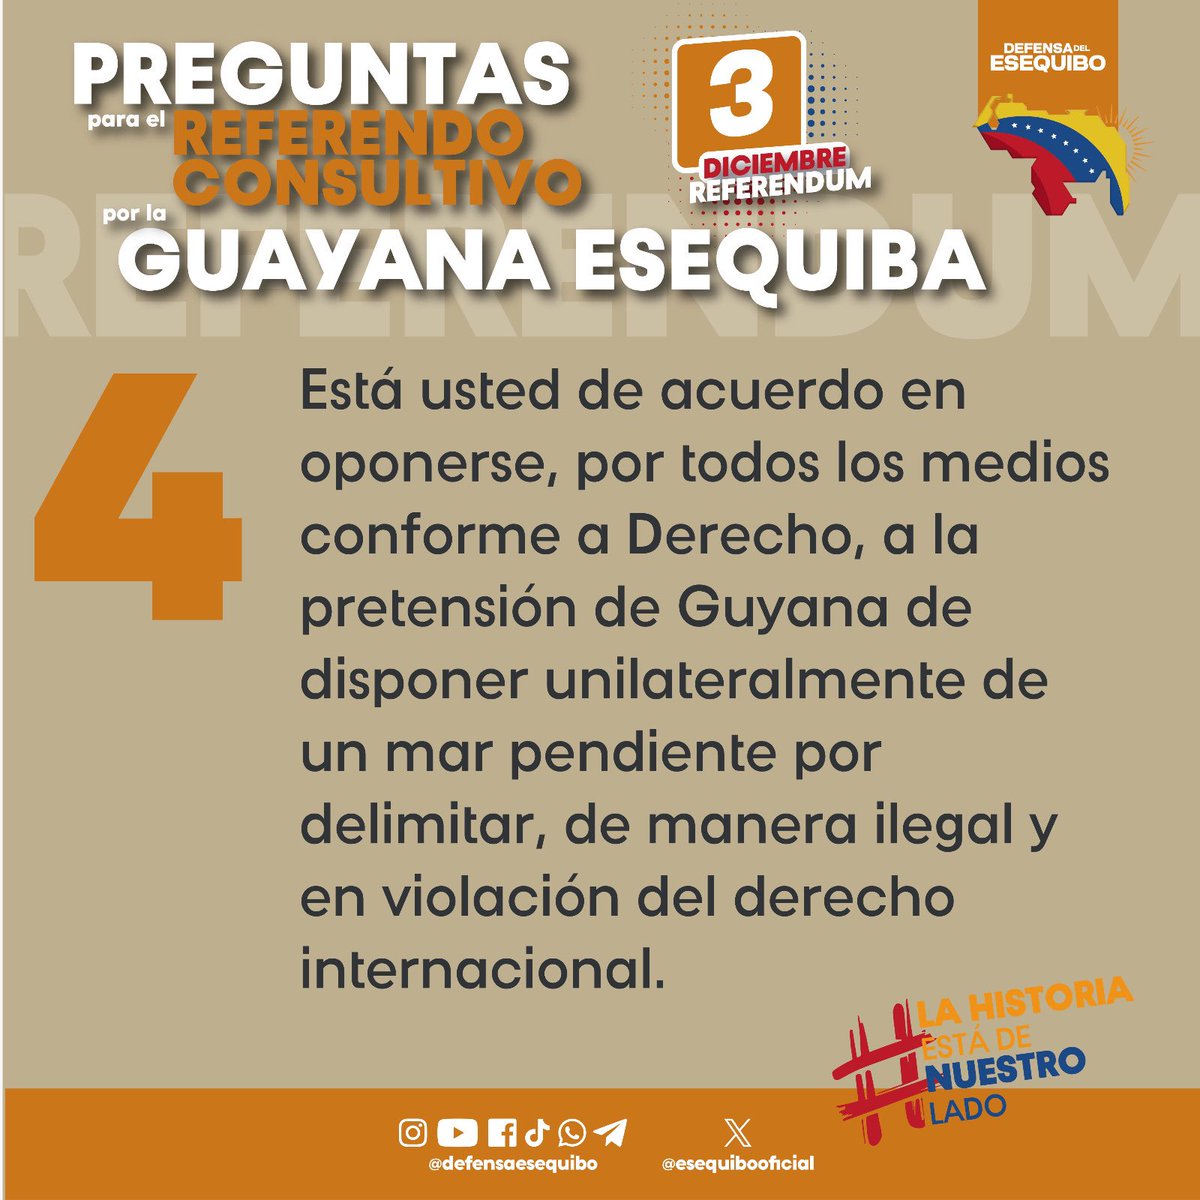 Estas son las preguntas que le serán consultadas al pueblo venezolano el próximo 3 de diciembre, en su legítimo derecho de defender nuestro territorio Esequibo.